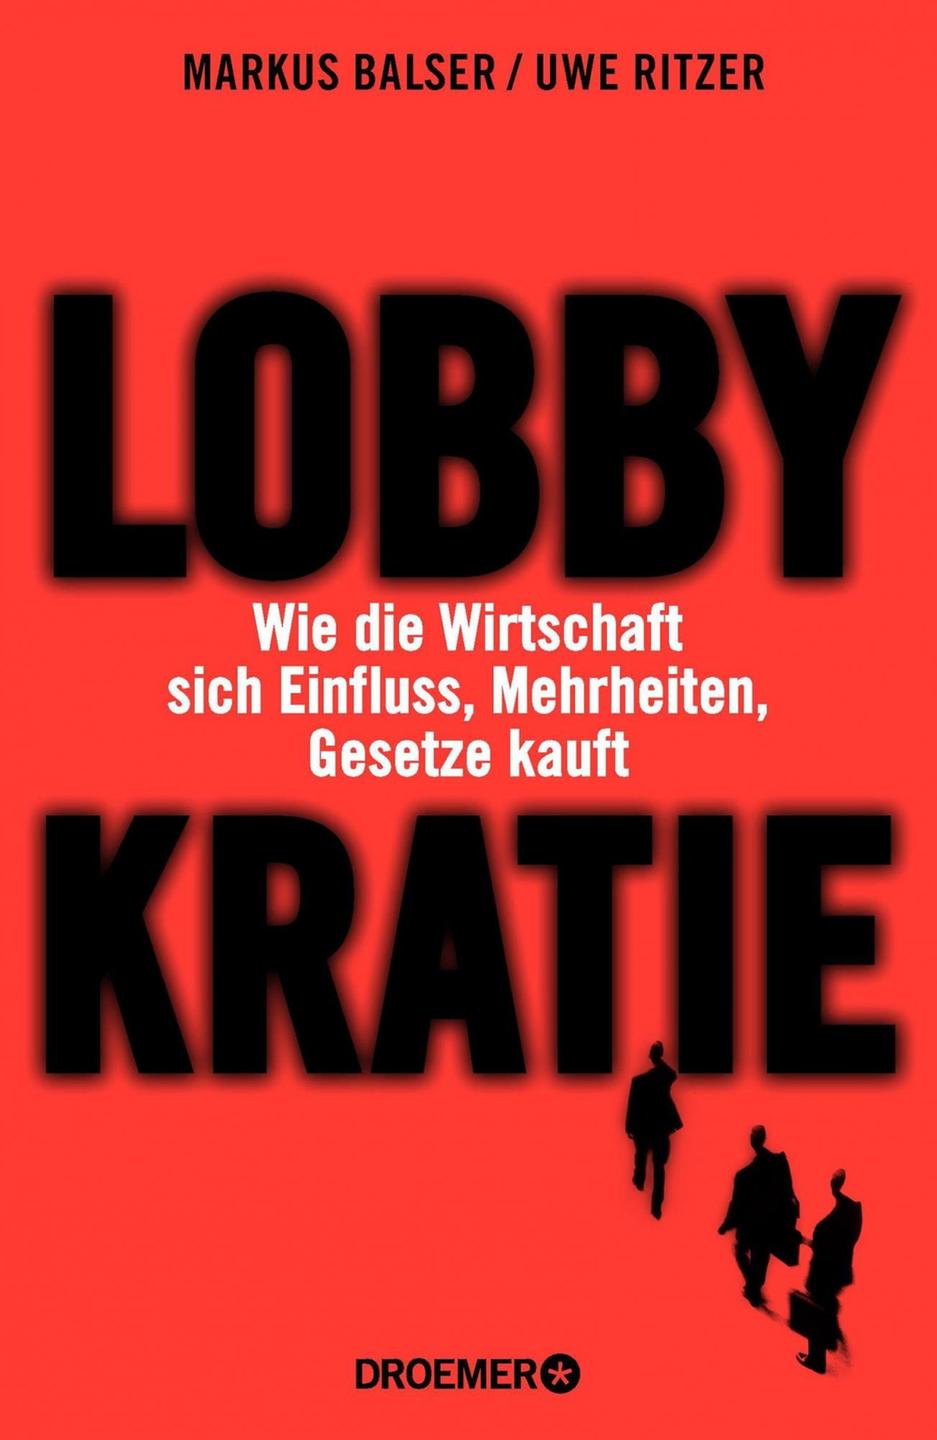 Cover - Uwe Ritzer, Markus Balser: "Lobbykratie"